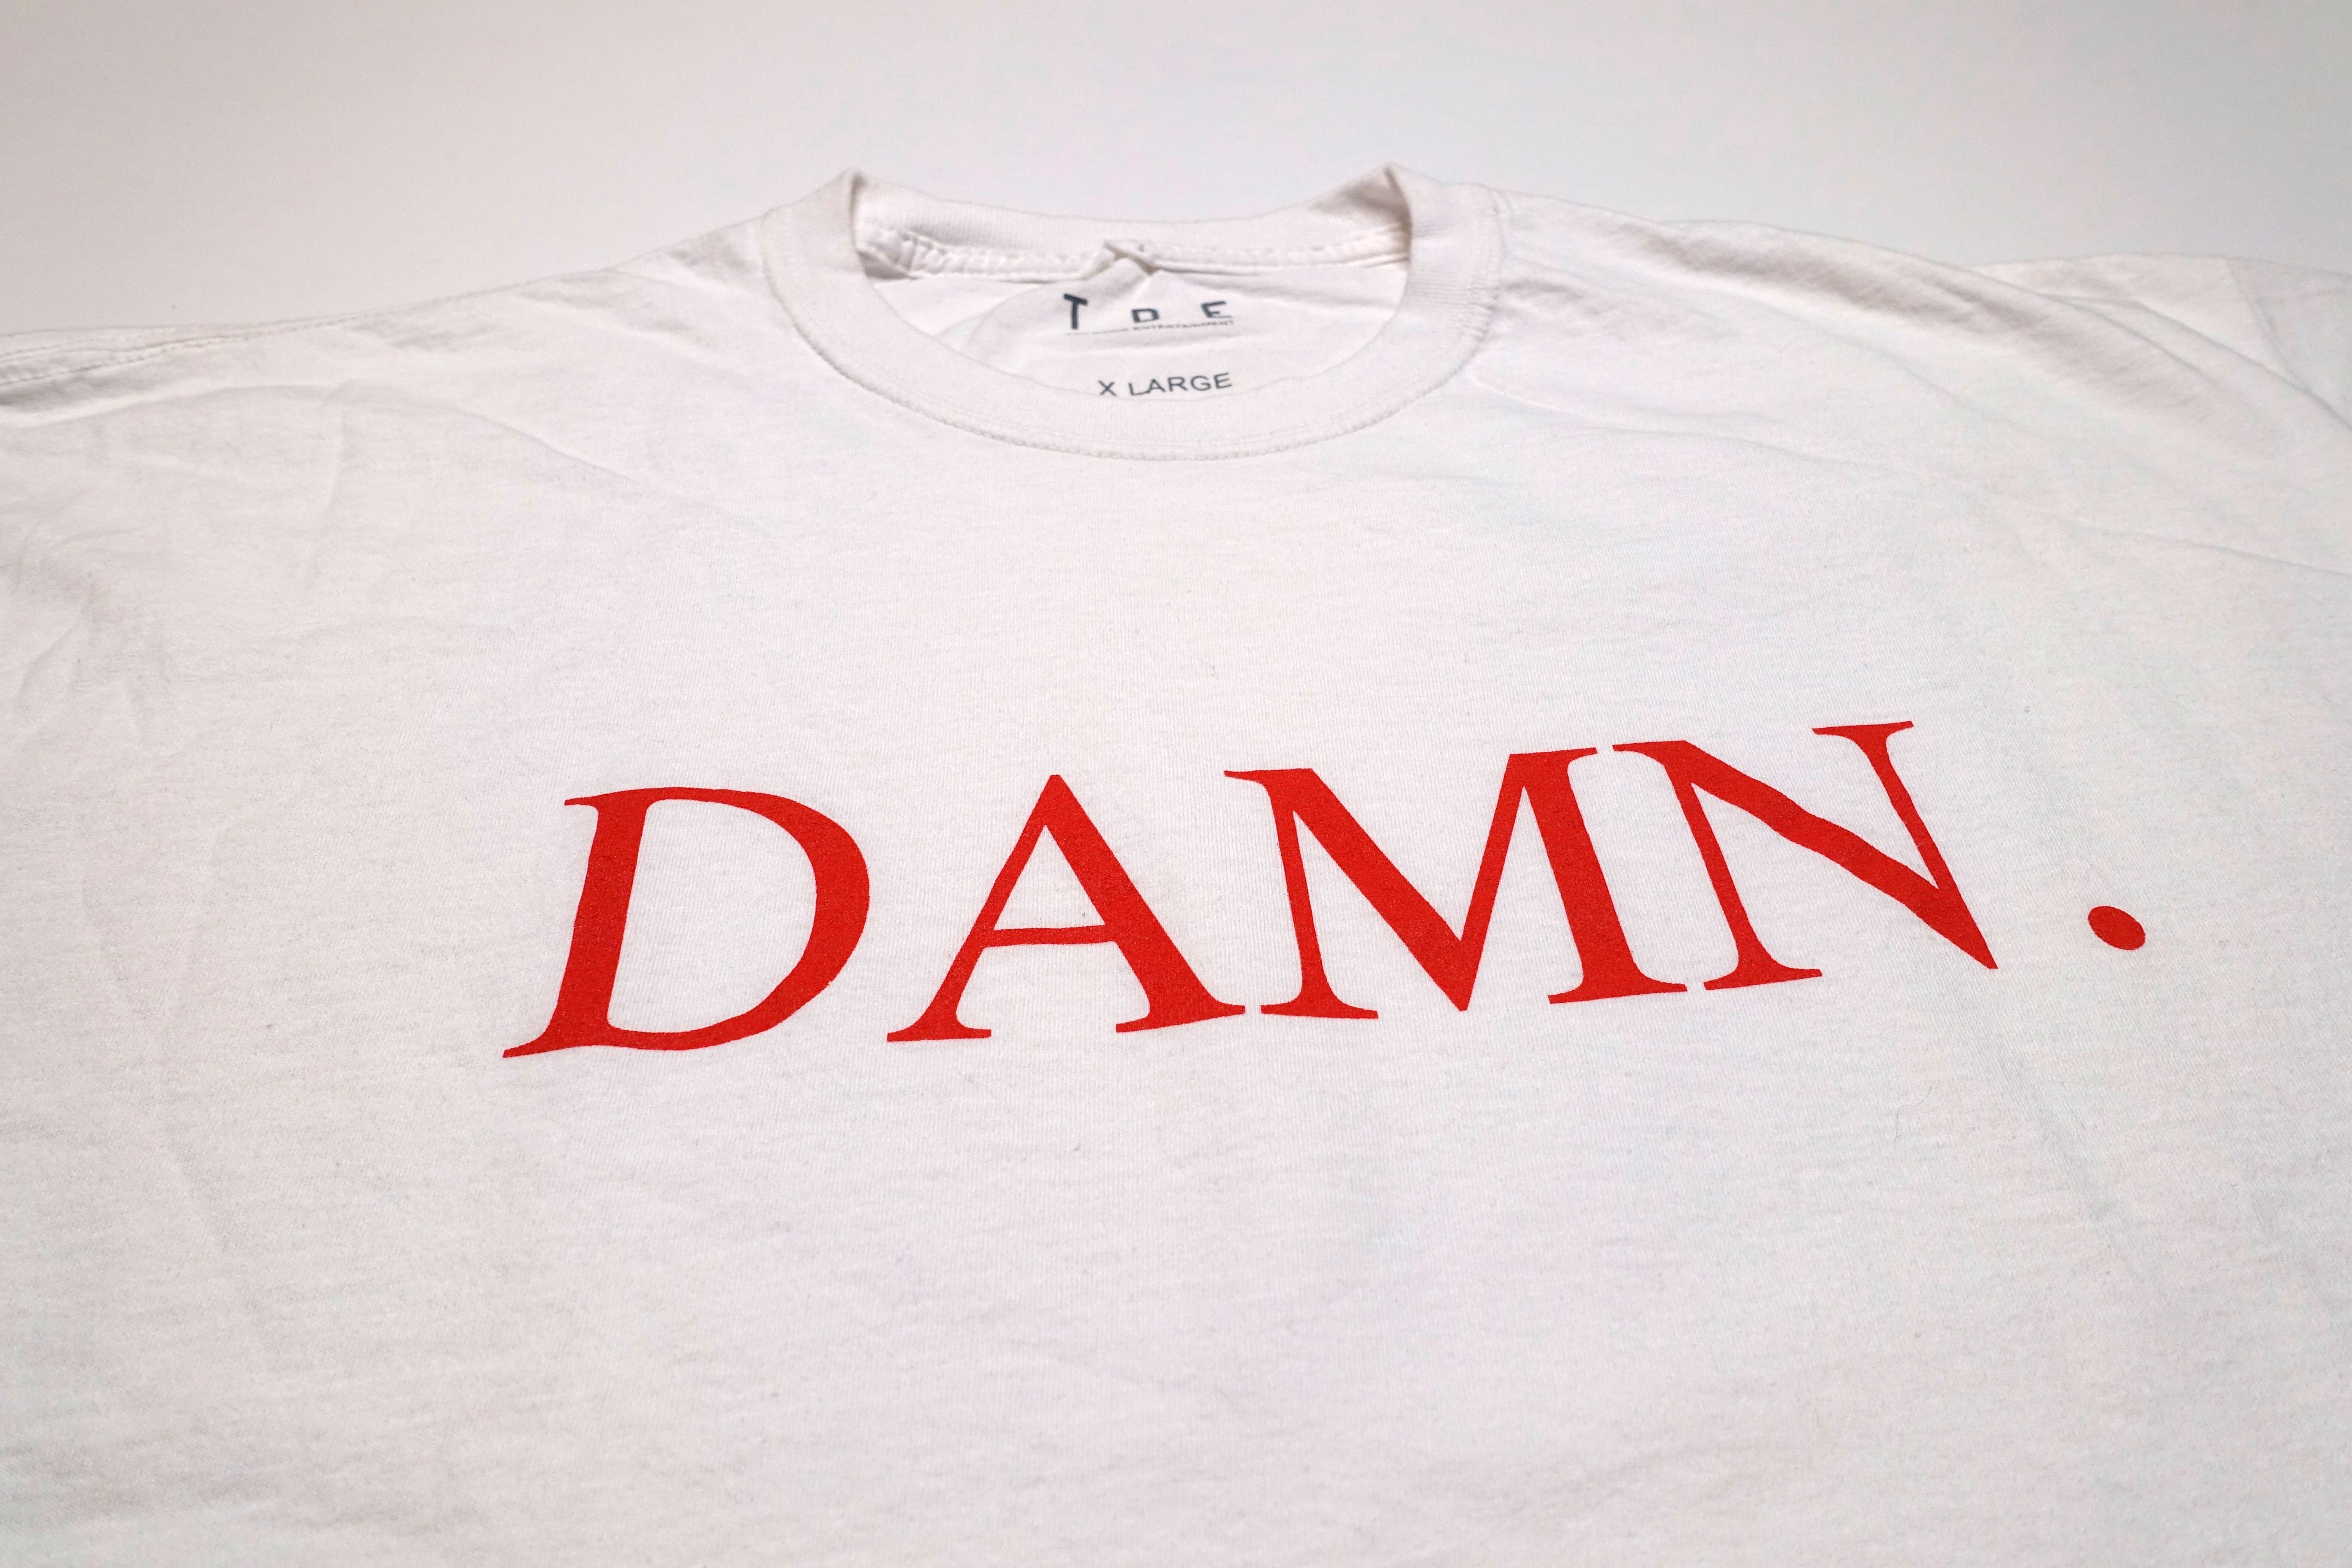 Kendrick Lamar - Damn 2017 US Tour Shirt Size XL